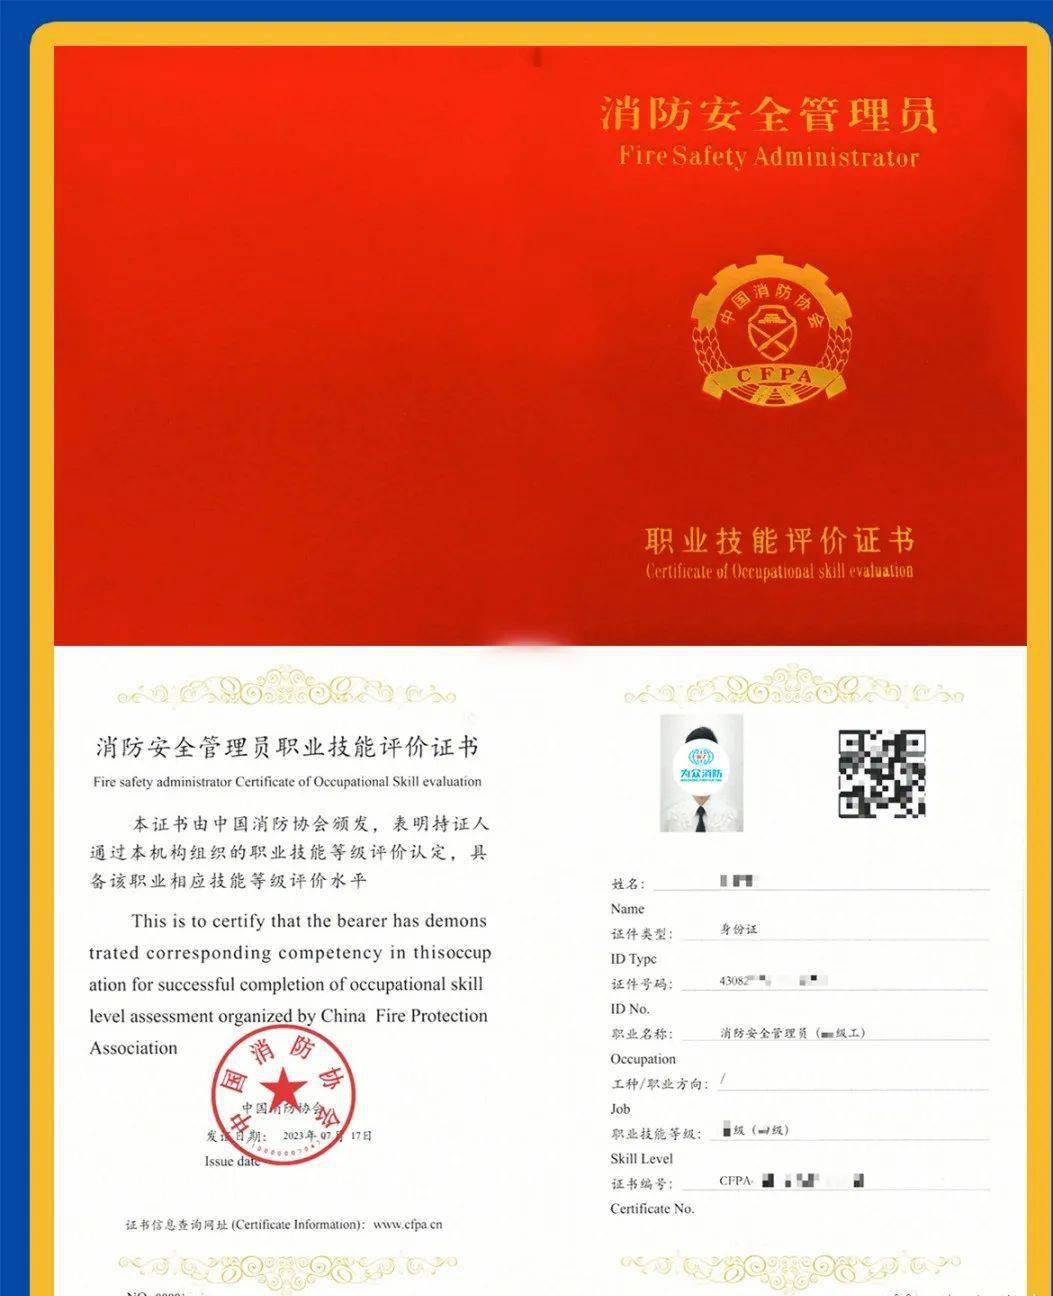 《消防安全管理员职业技能评价证书》由中国消防协会颁发,此证书全国